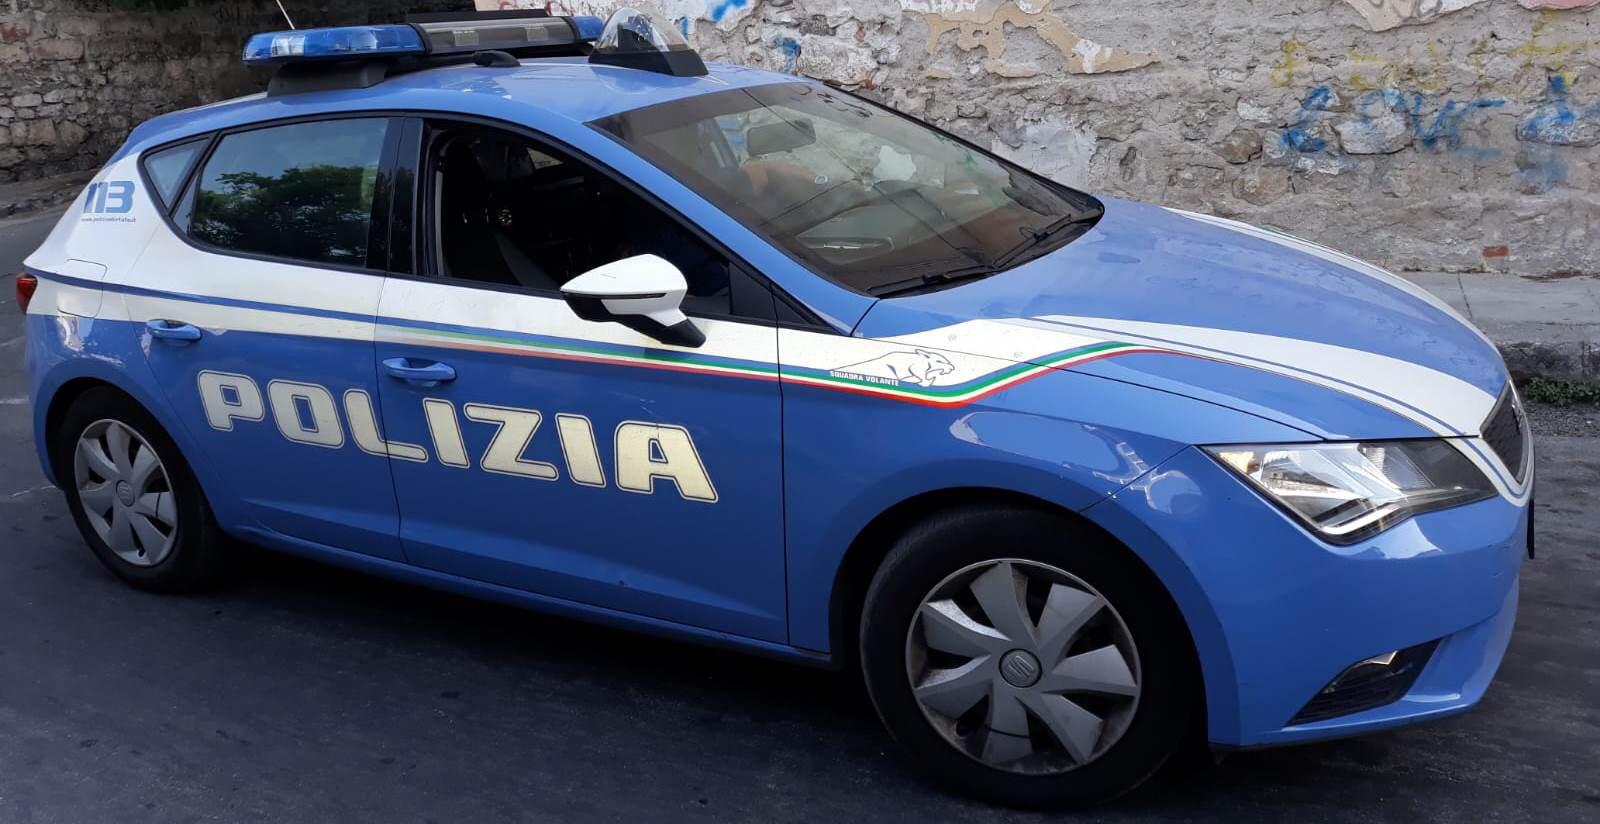 Arrestato uomo residente a Termini Imerese: si recava a Palermo, in baffo ai divieti del Coronavirus, per acquistare droga